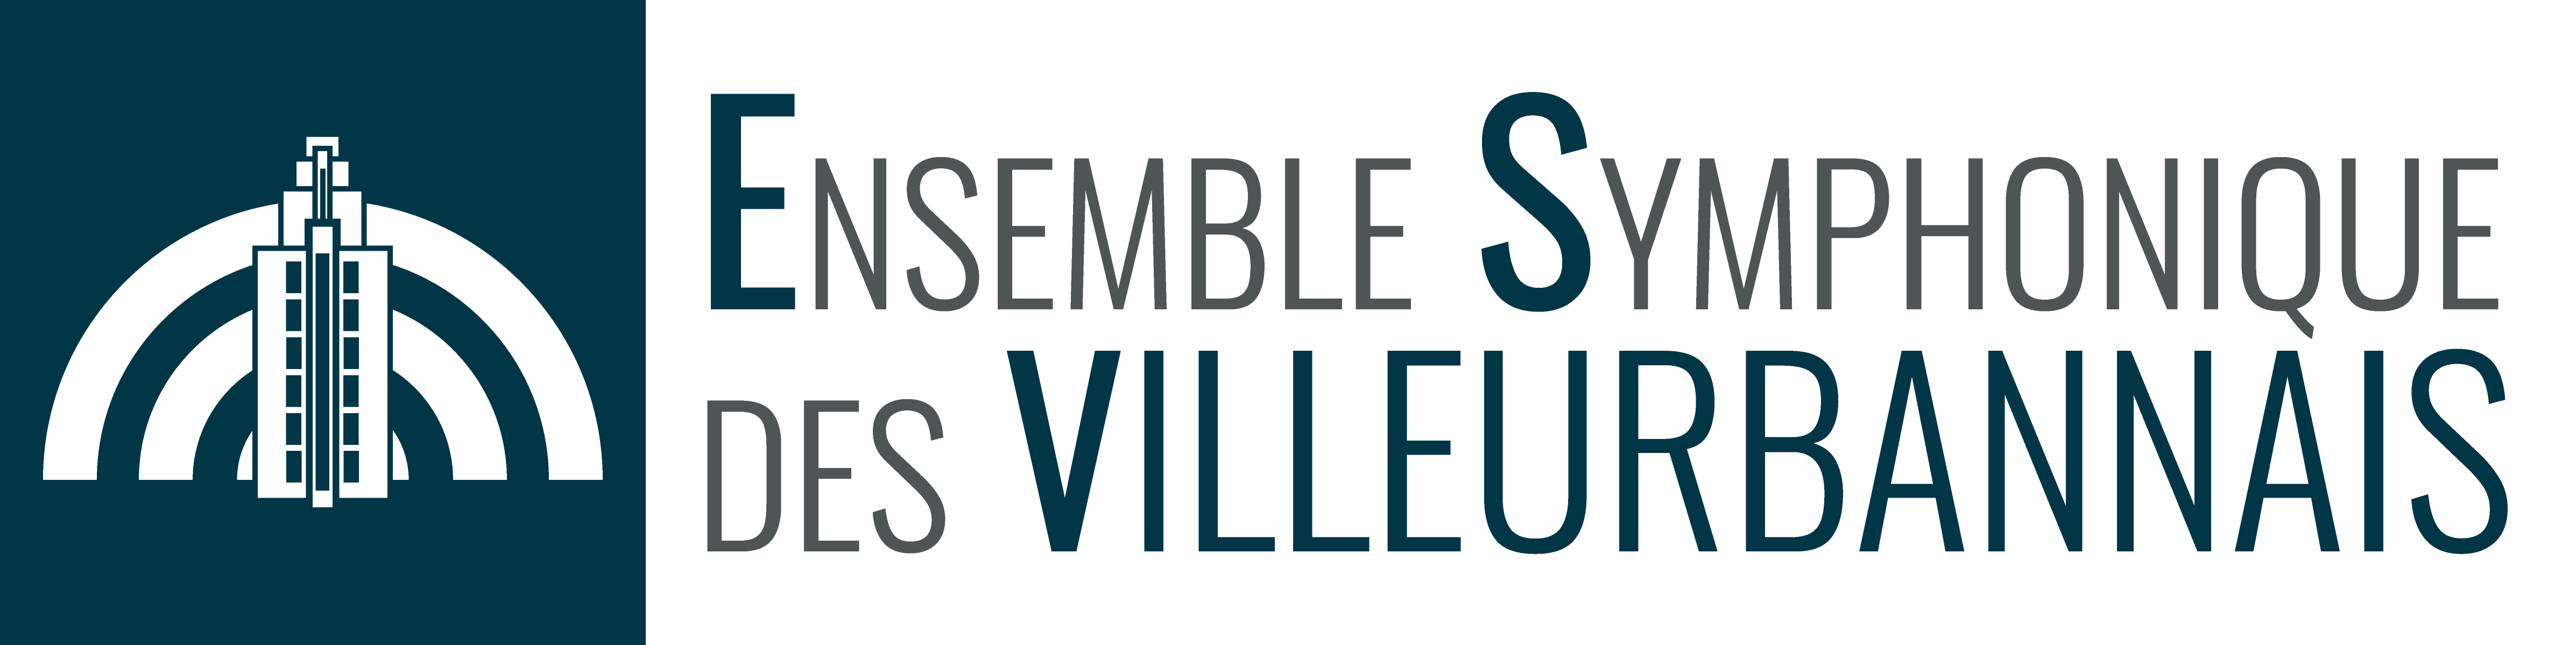 Ensemble Symphonique des Villeurbannais